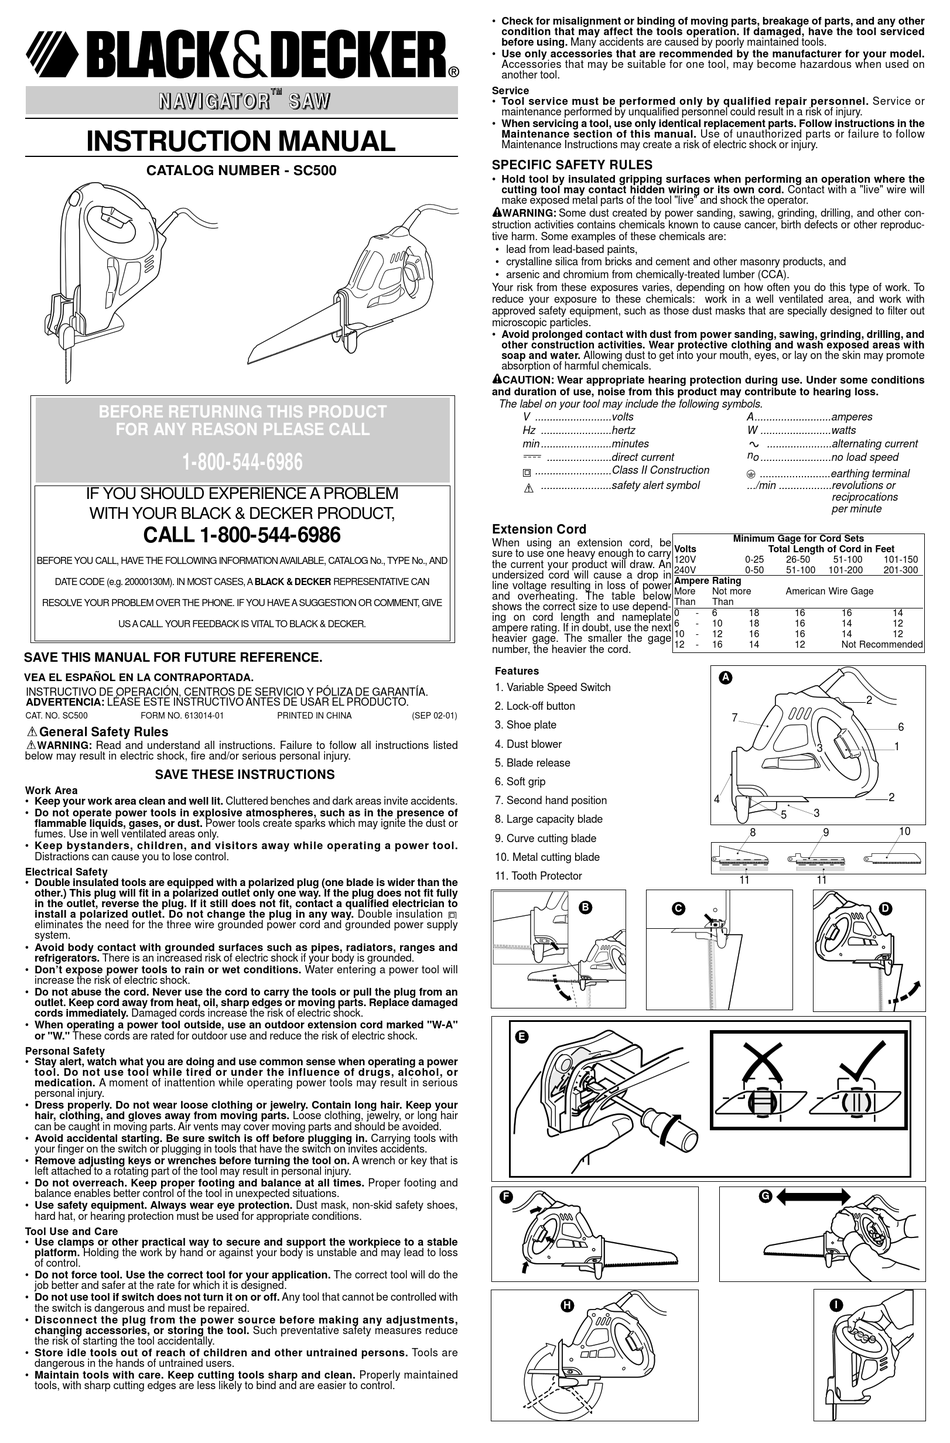 Manual de usuario Black & Decker CM2021B (Español - 2 páginas)